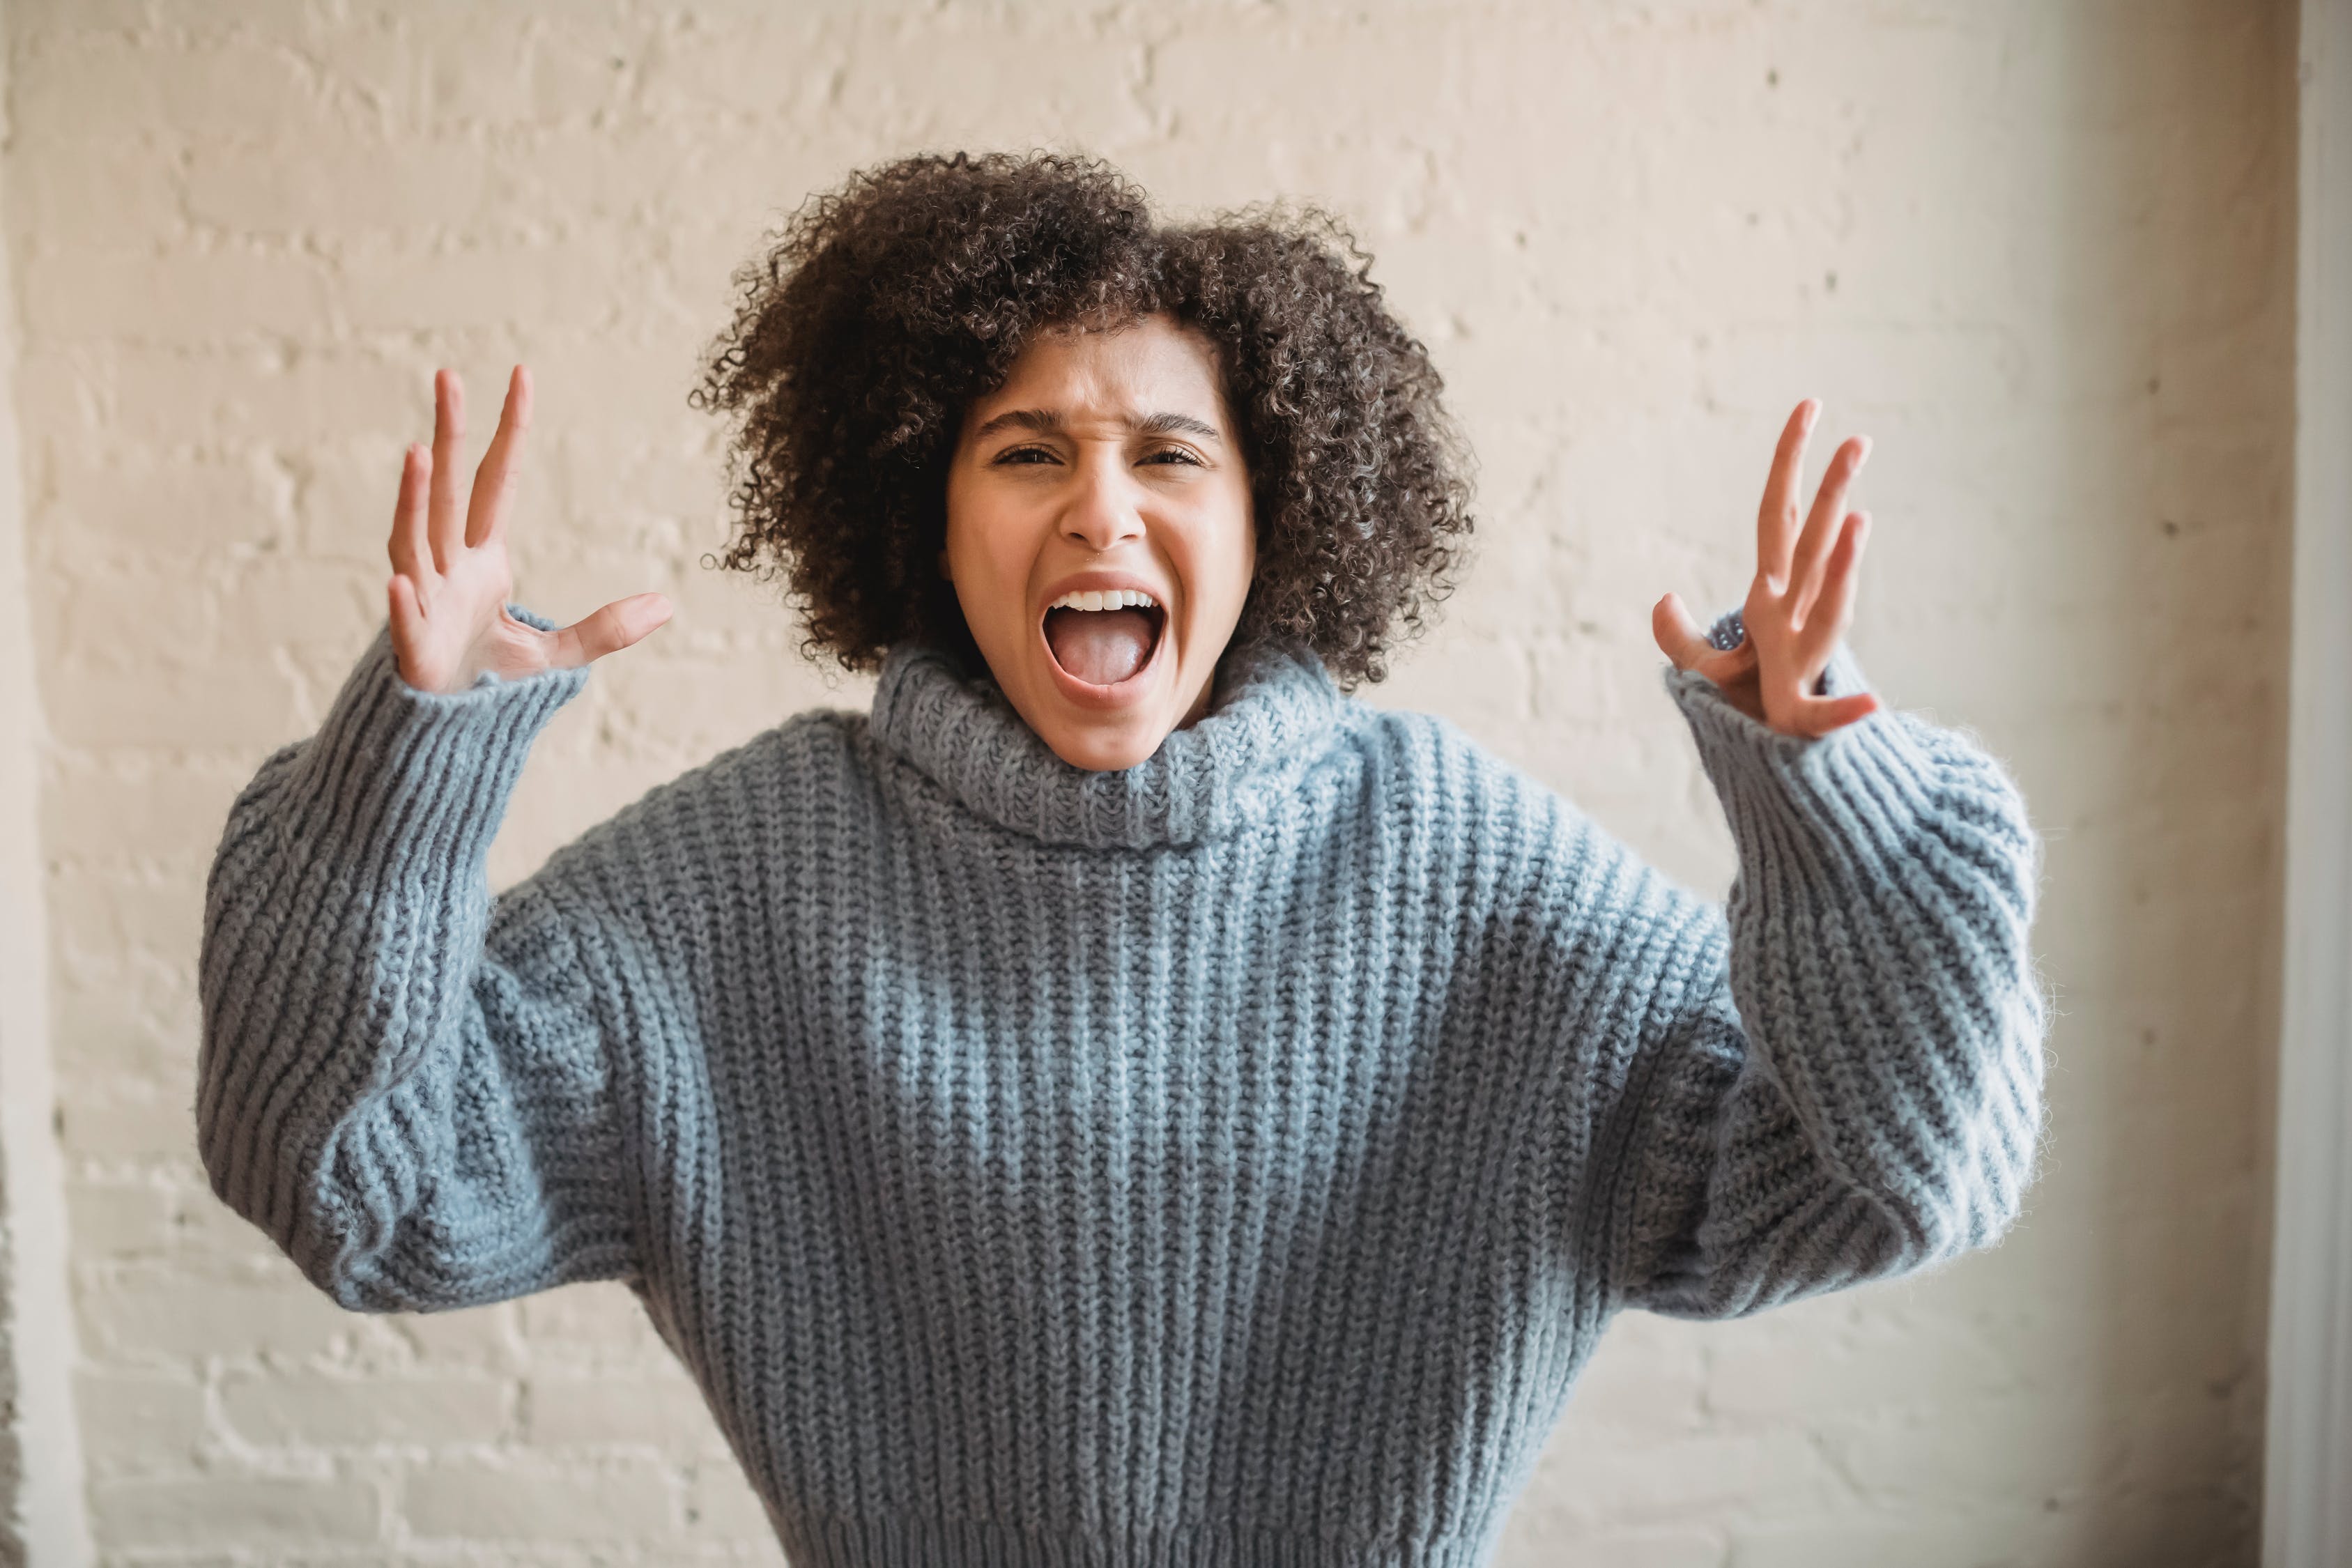 "Меня всё бесит!": 10 эффективных психологических методов, как справиться со злостью и раздражением